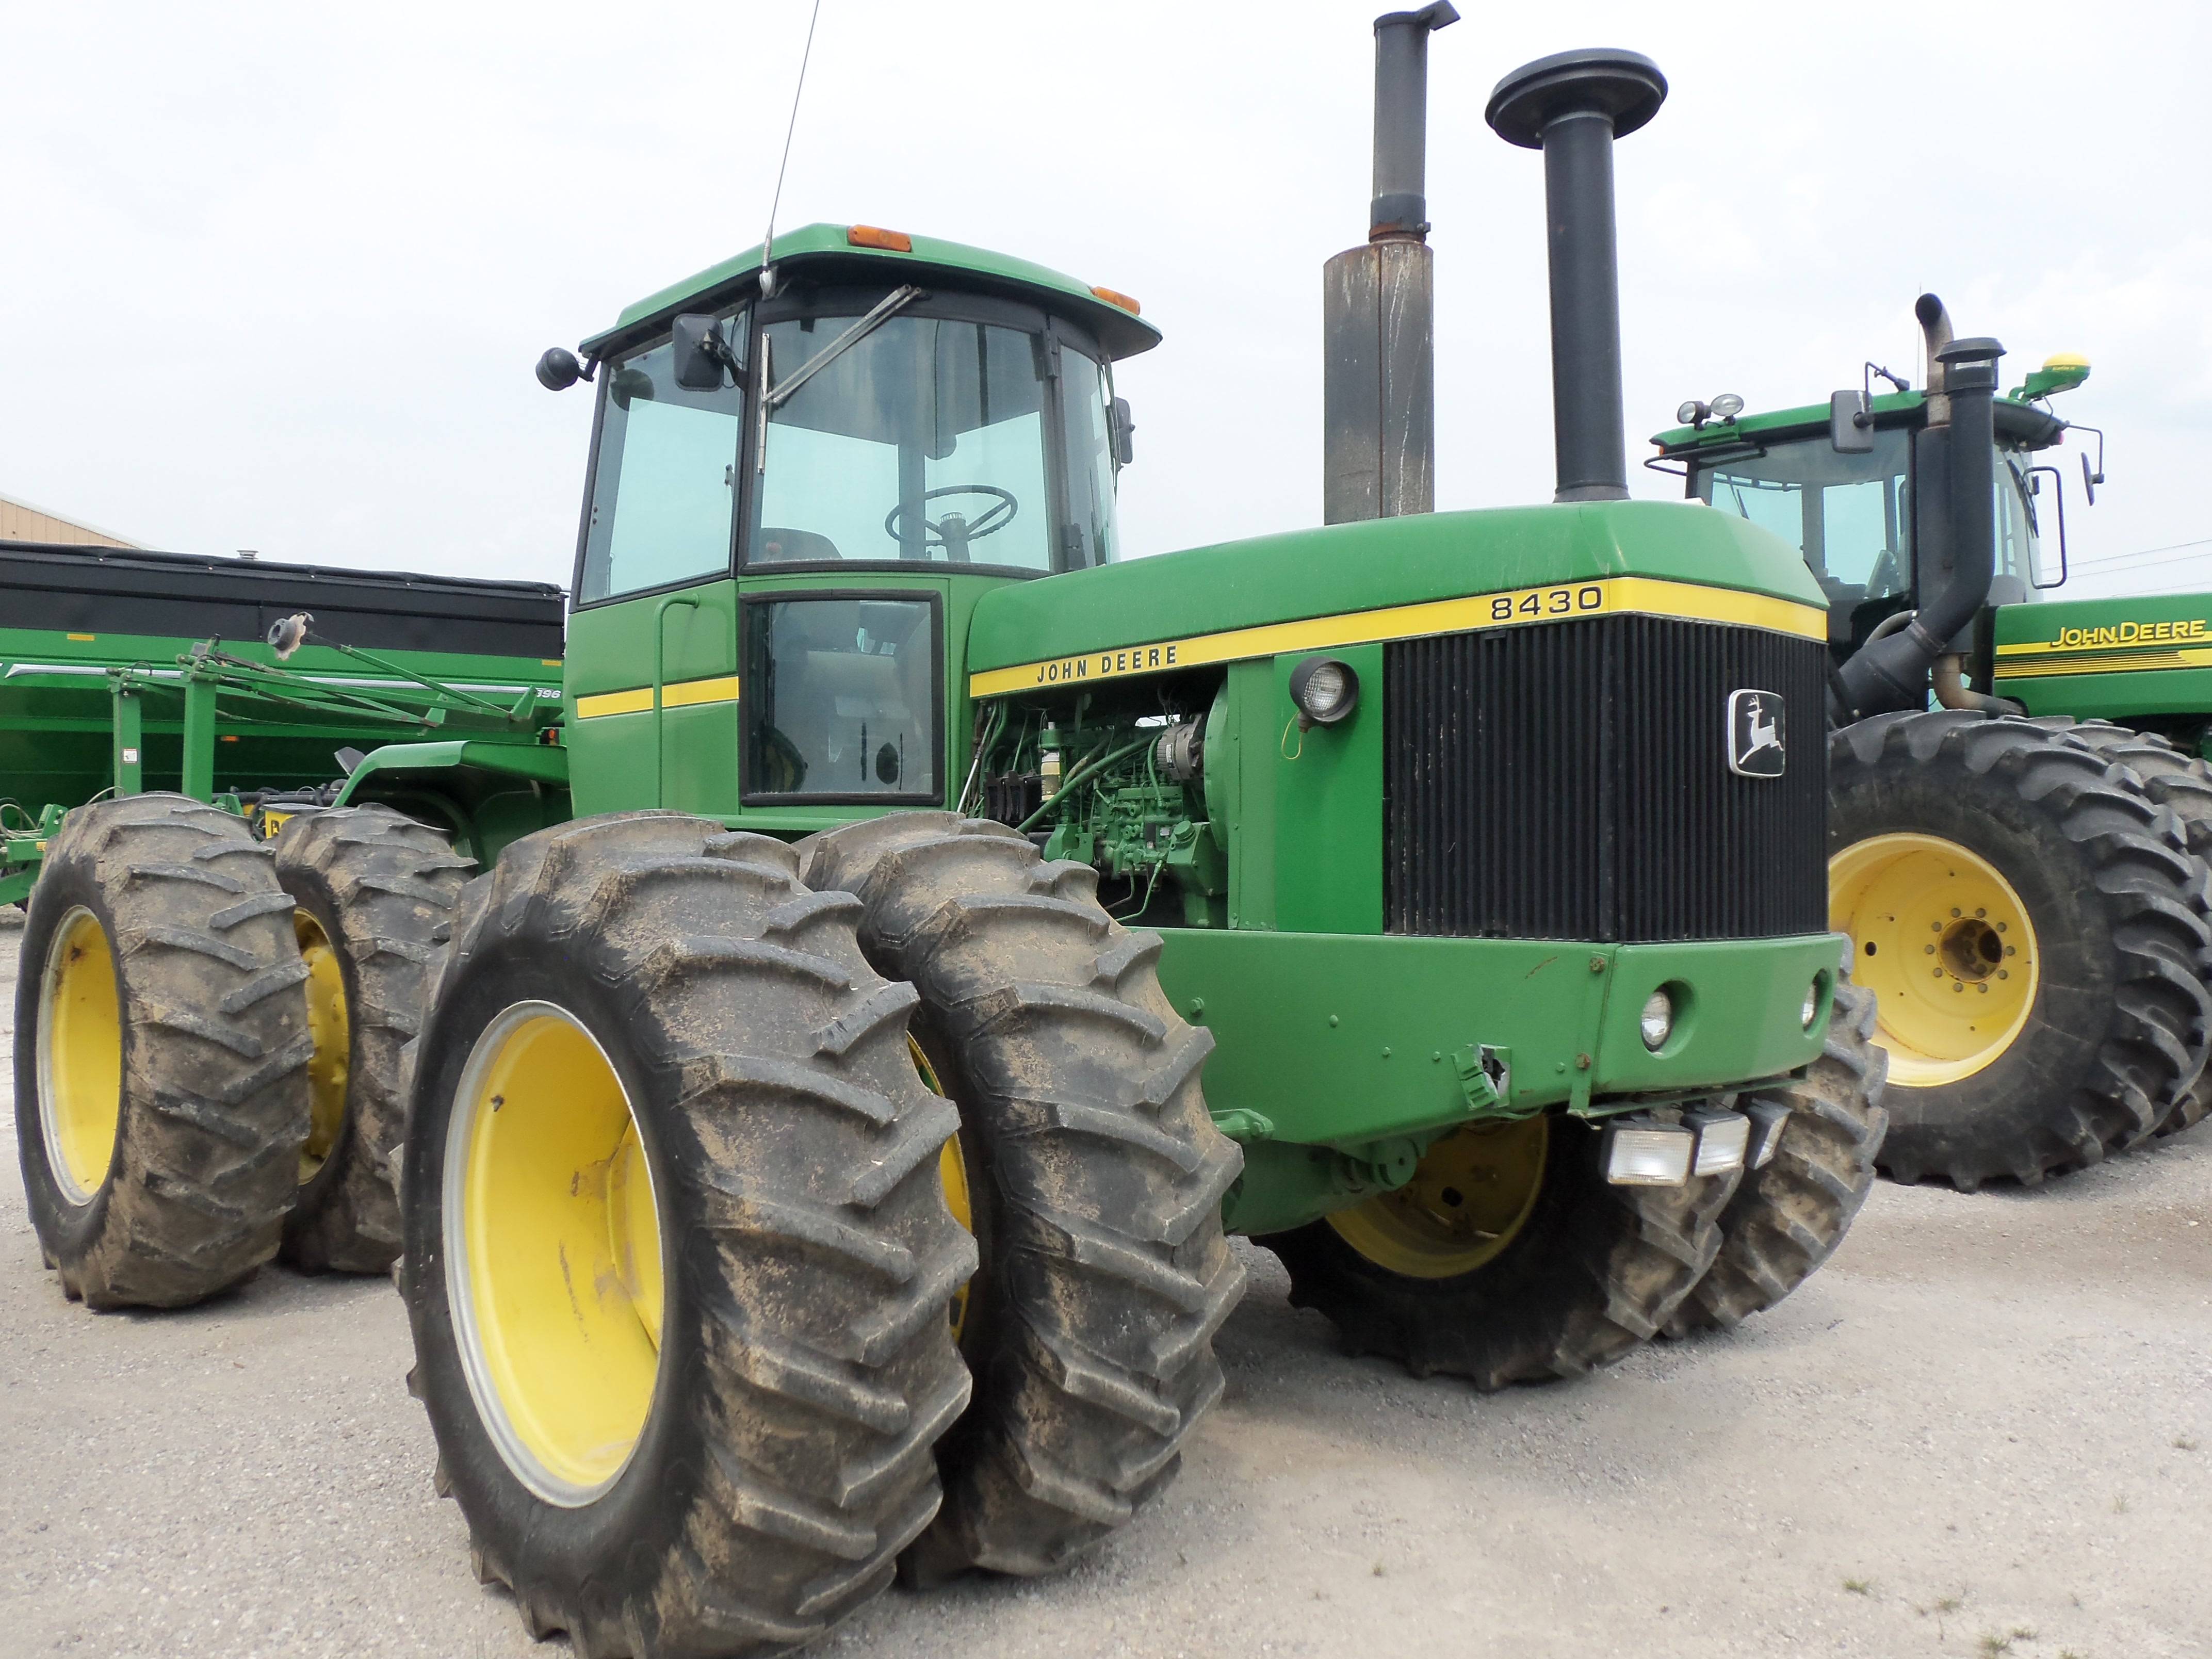 John deere 8430 row-crop tractor: review and specs - tractor specs